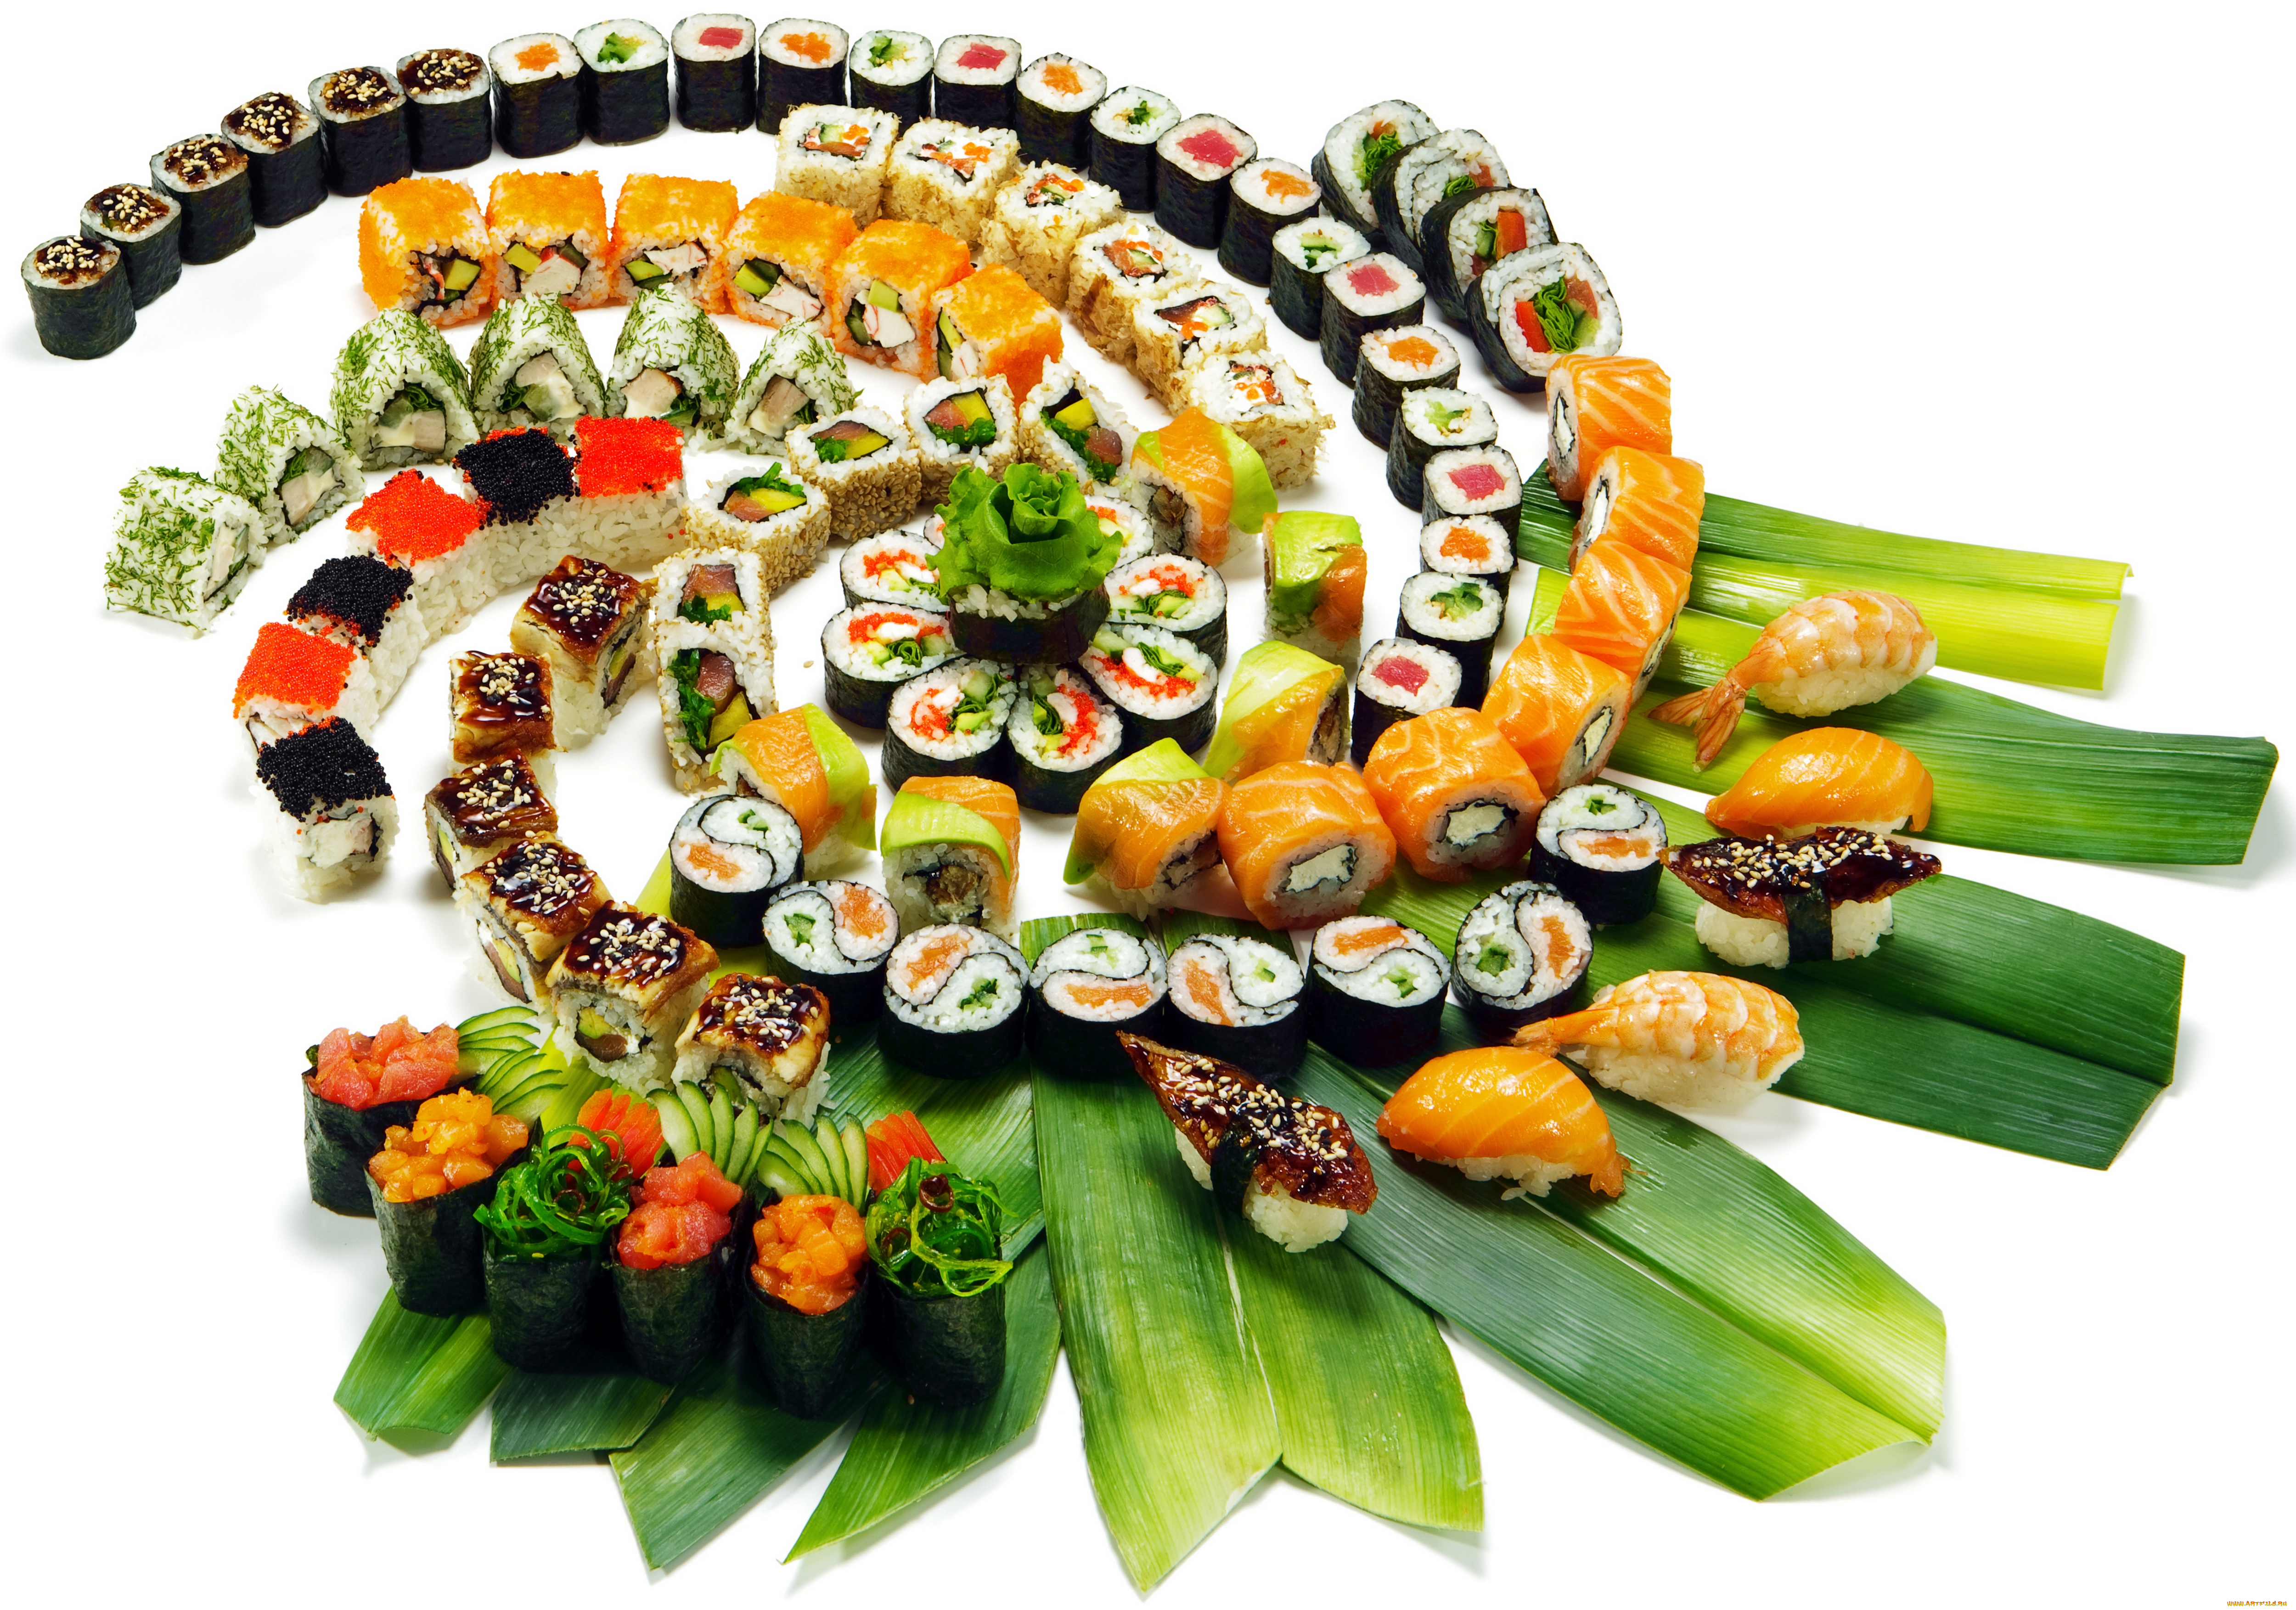 еда, рыба, , морепродукты, , суши, , роллы, лосось, красная, икра, морепродукты, чёрная, японская, кухня, роллы, суси, листья, зелень, суши, украшения, сервировка, japan, food, sushi, нарезка, тунец, креветки, рис, ломтики